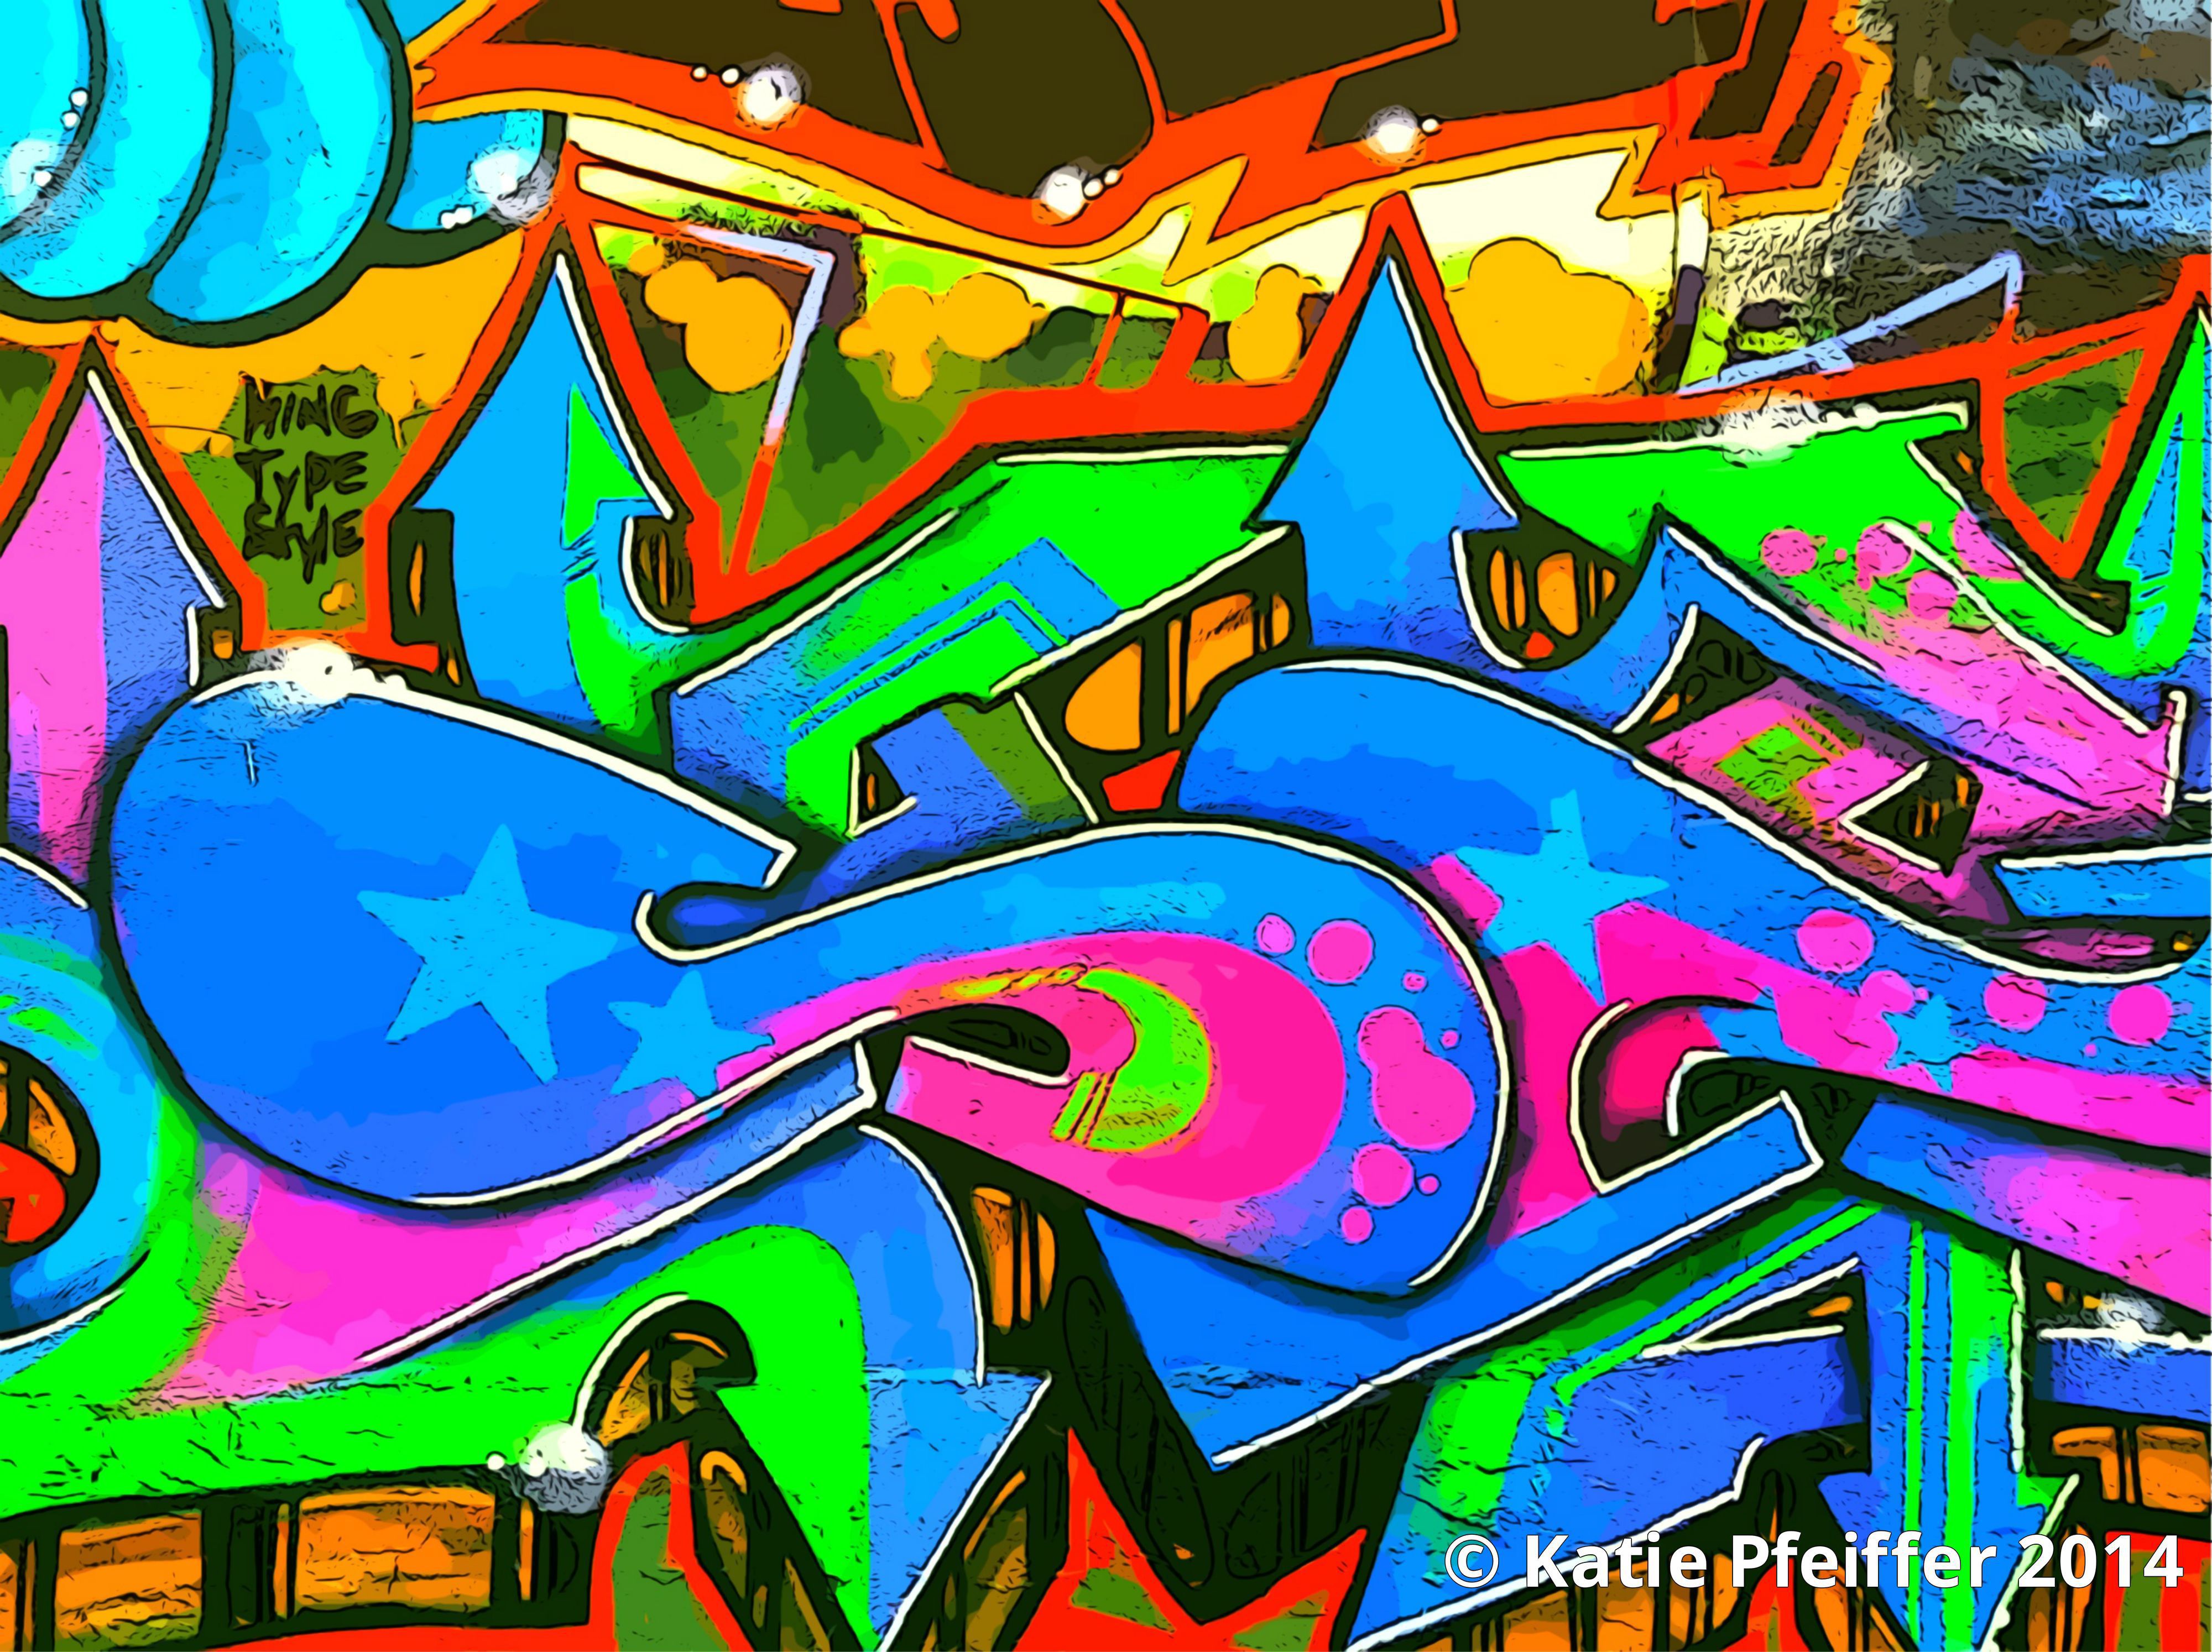 Download 7700 Gambar Graffiti Wall Terbaru Gratis HD